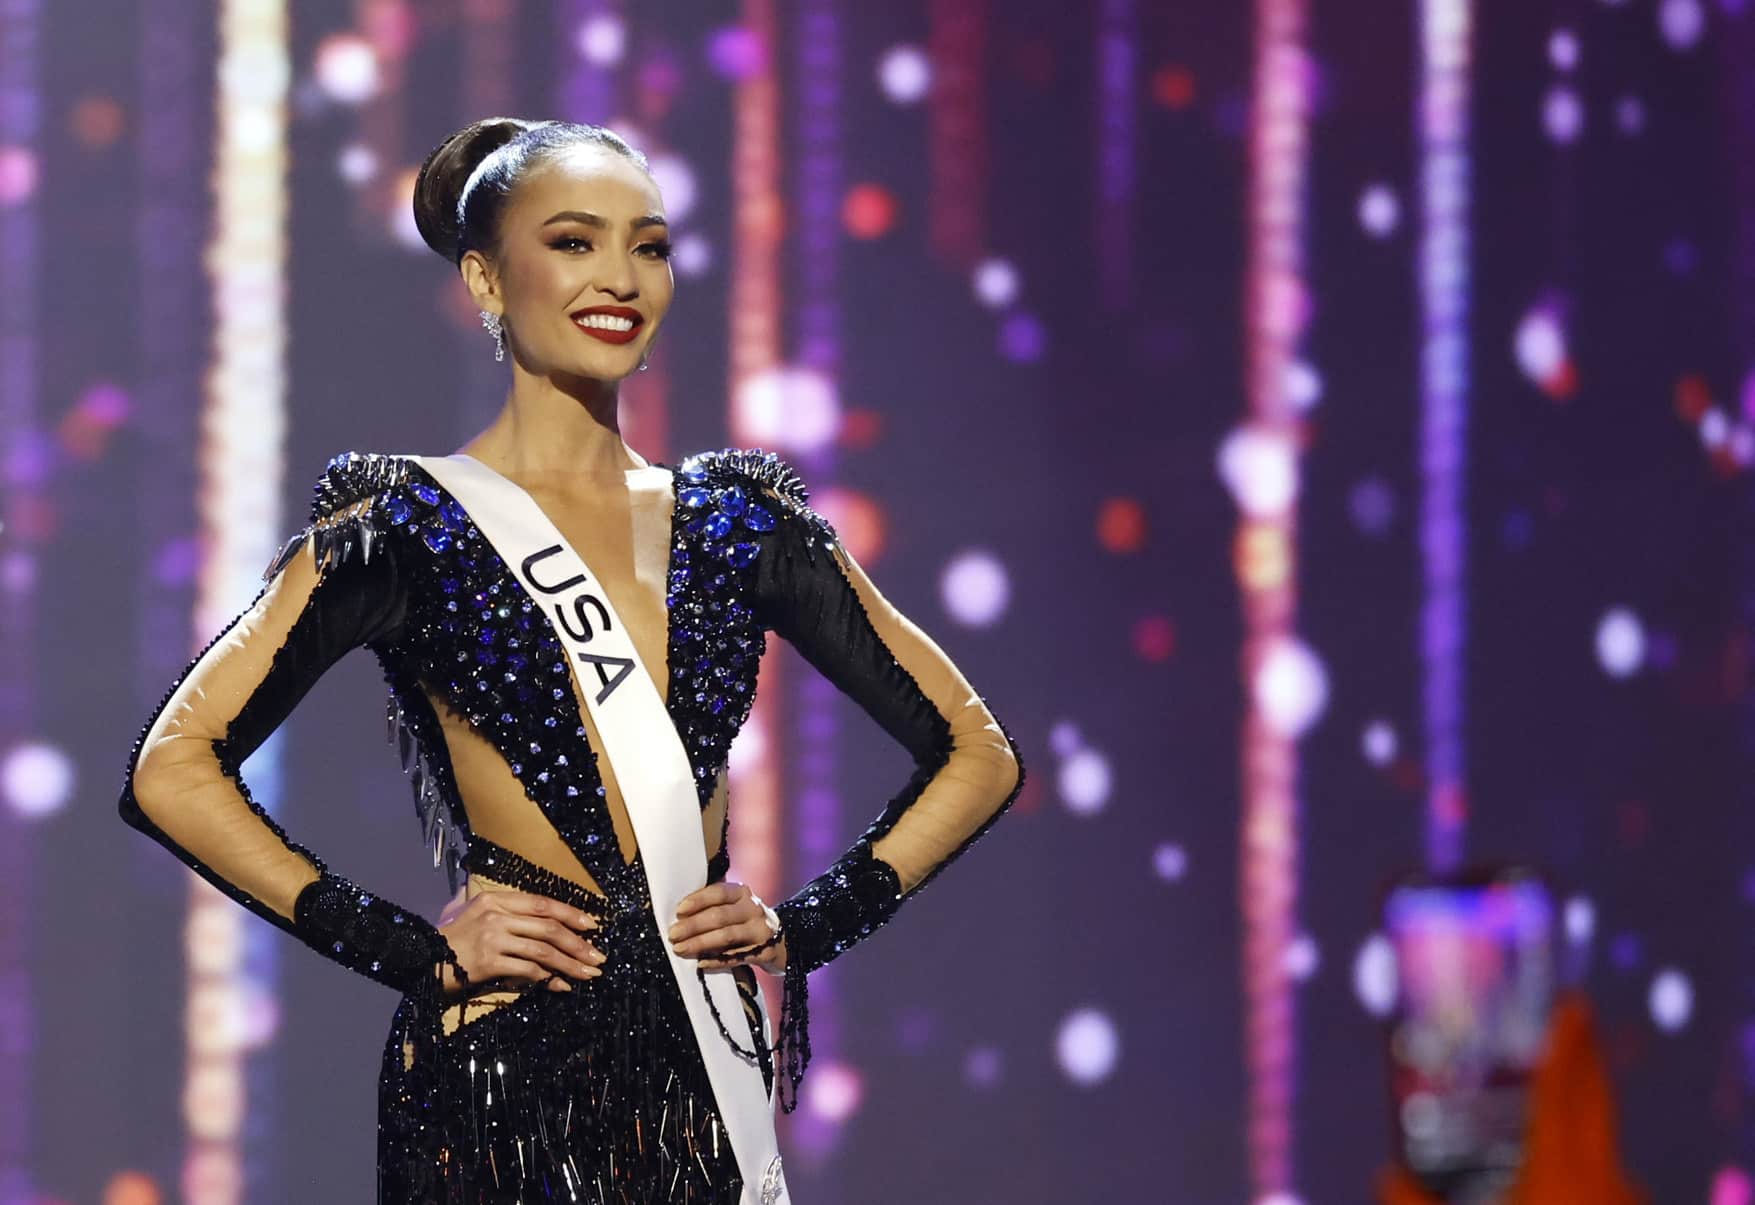 Las secuelas de Miss Universo: periodista María Celeste Arrarás critica elección de nueva reina y después aclara posición